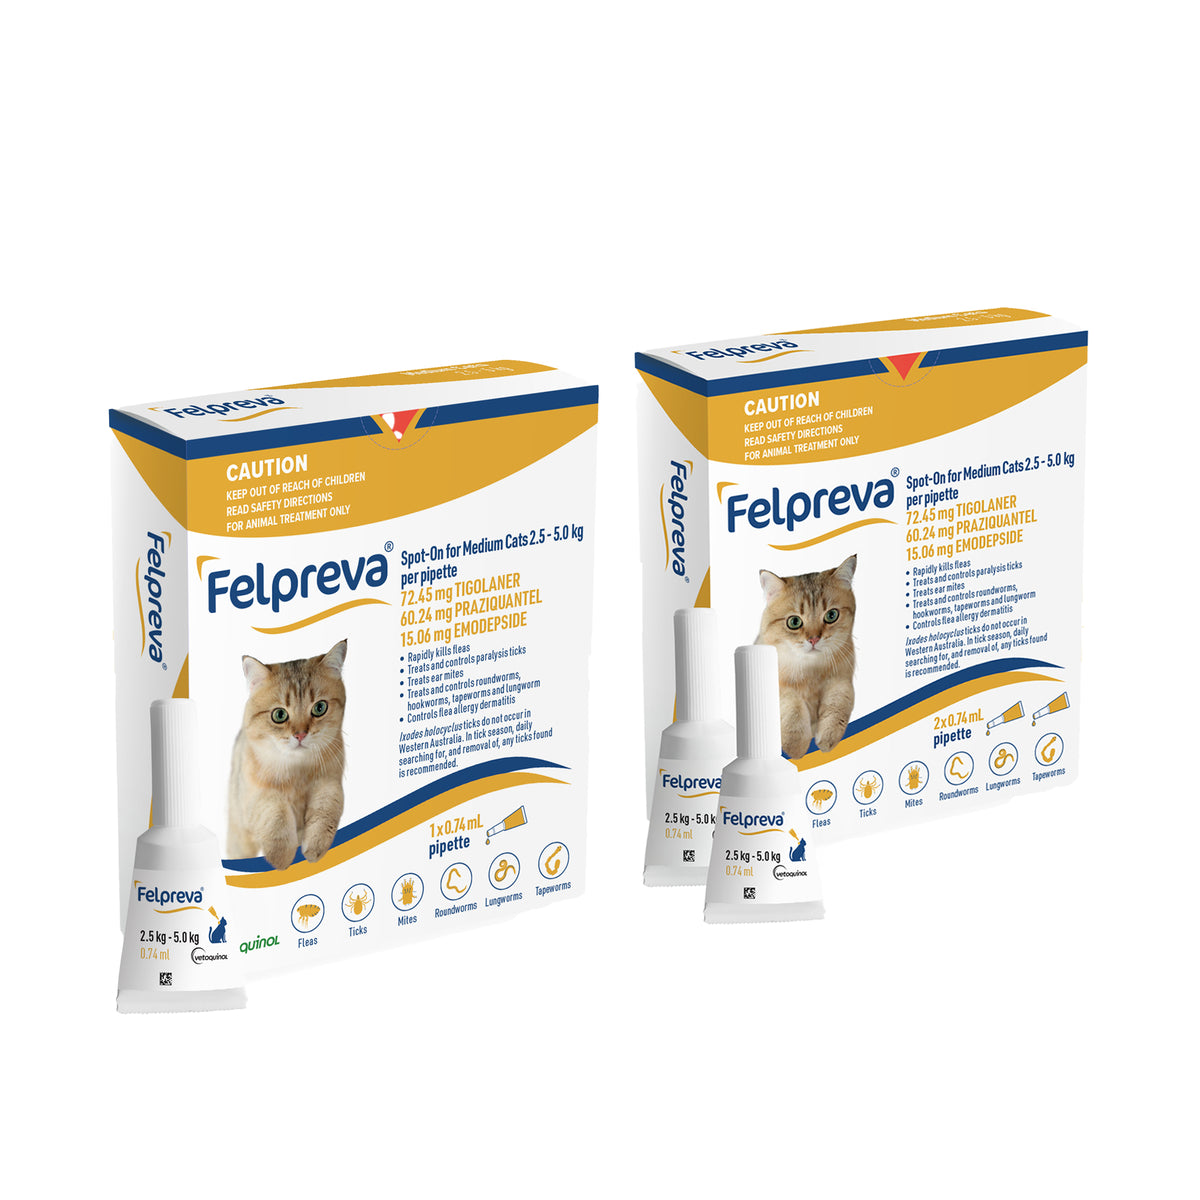 Felpreva Spot-On for Medium Cats 2.5-5kg